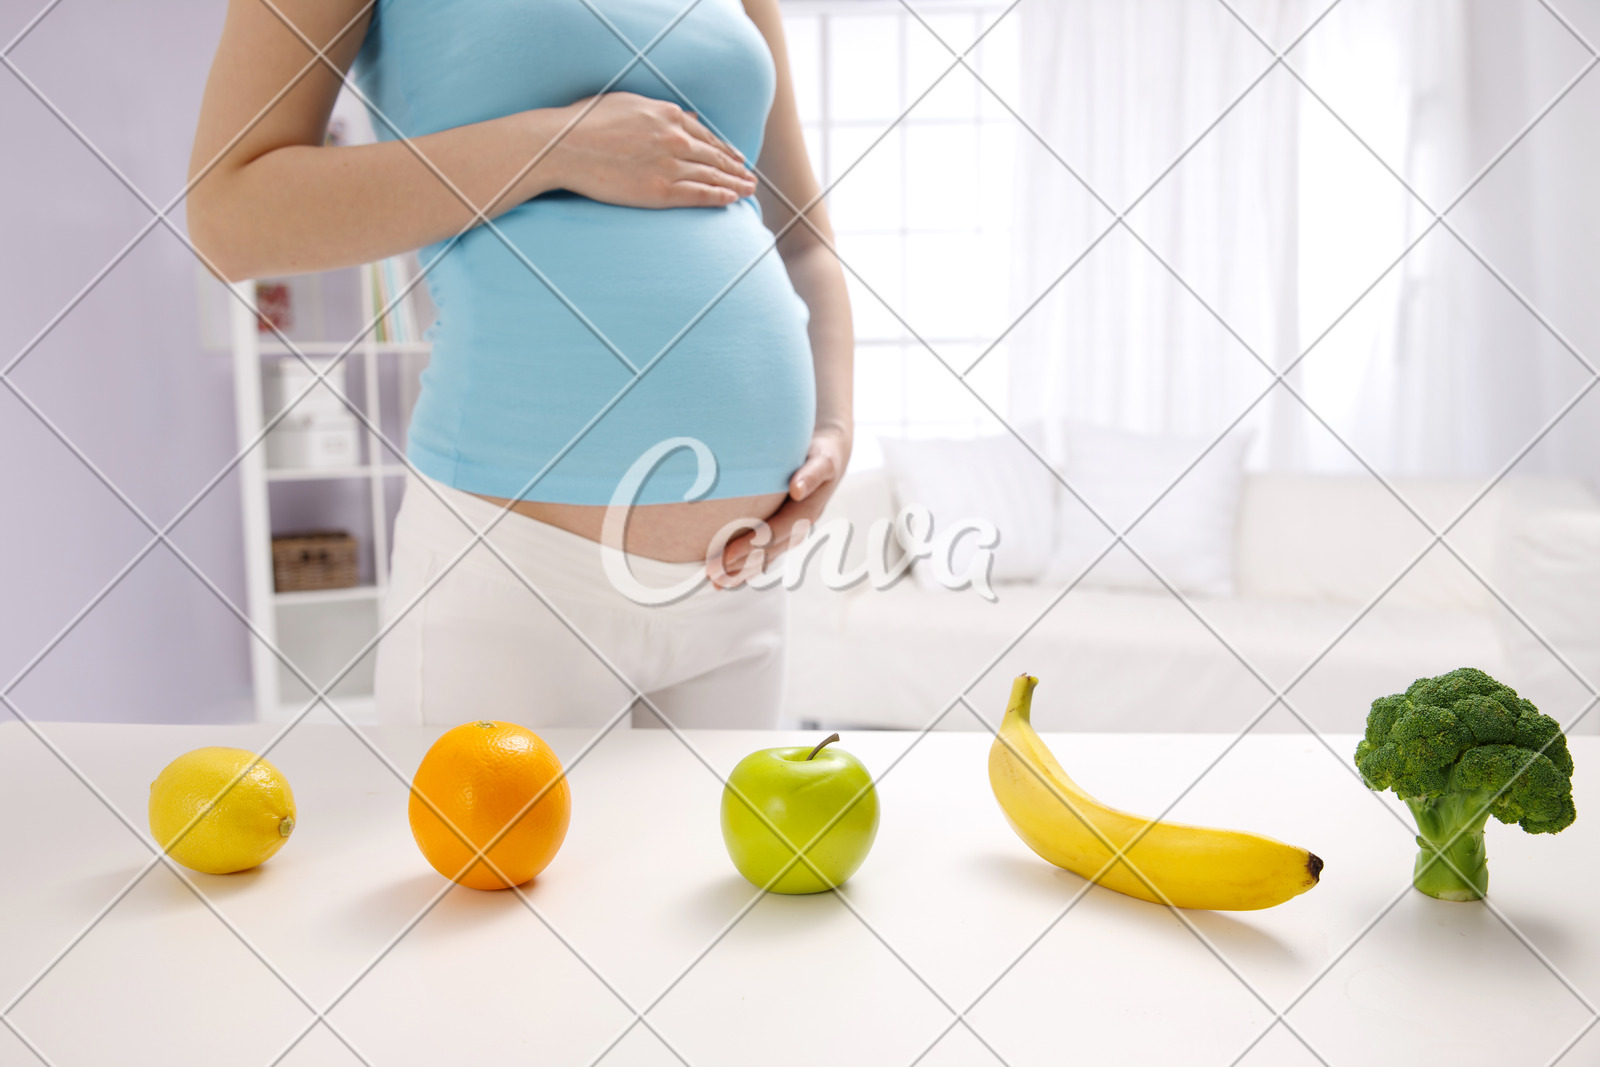 吃新鲜蔬菜沙拉的年轻孕妇在厨房里 库存照片. 图片 包括有 户内, 弯脚的, 女性, 自然, 能源, 婴孩 - 151159484